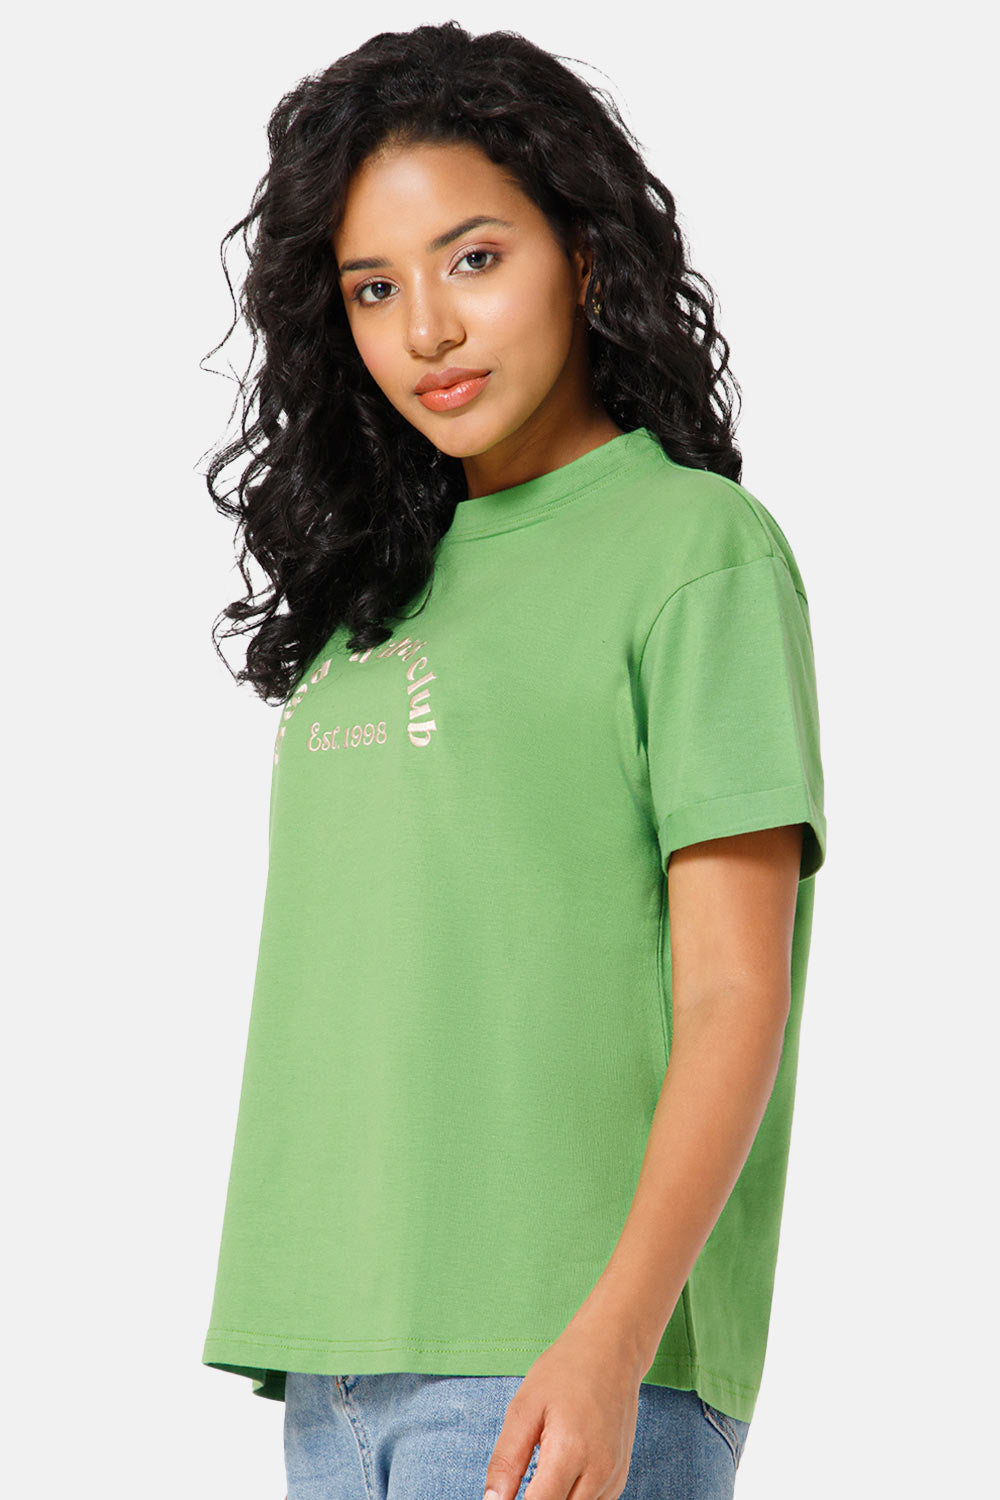 Jusperf Women Half Sleeve Crew Neck T-shirt  - Green - SD22